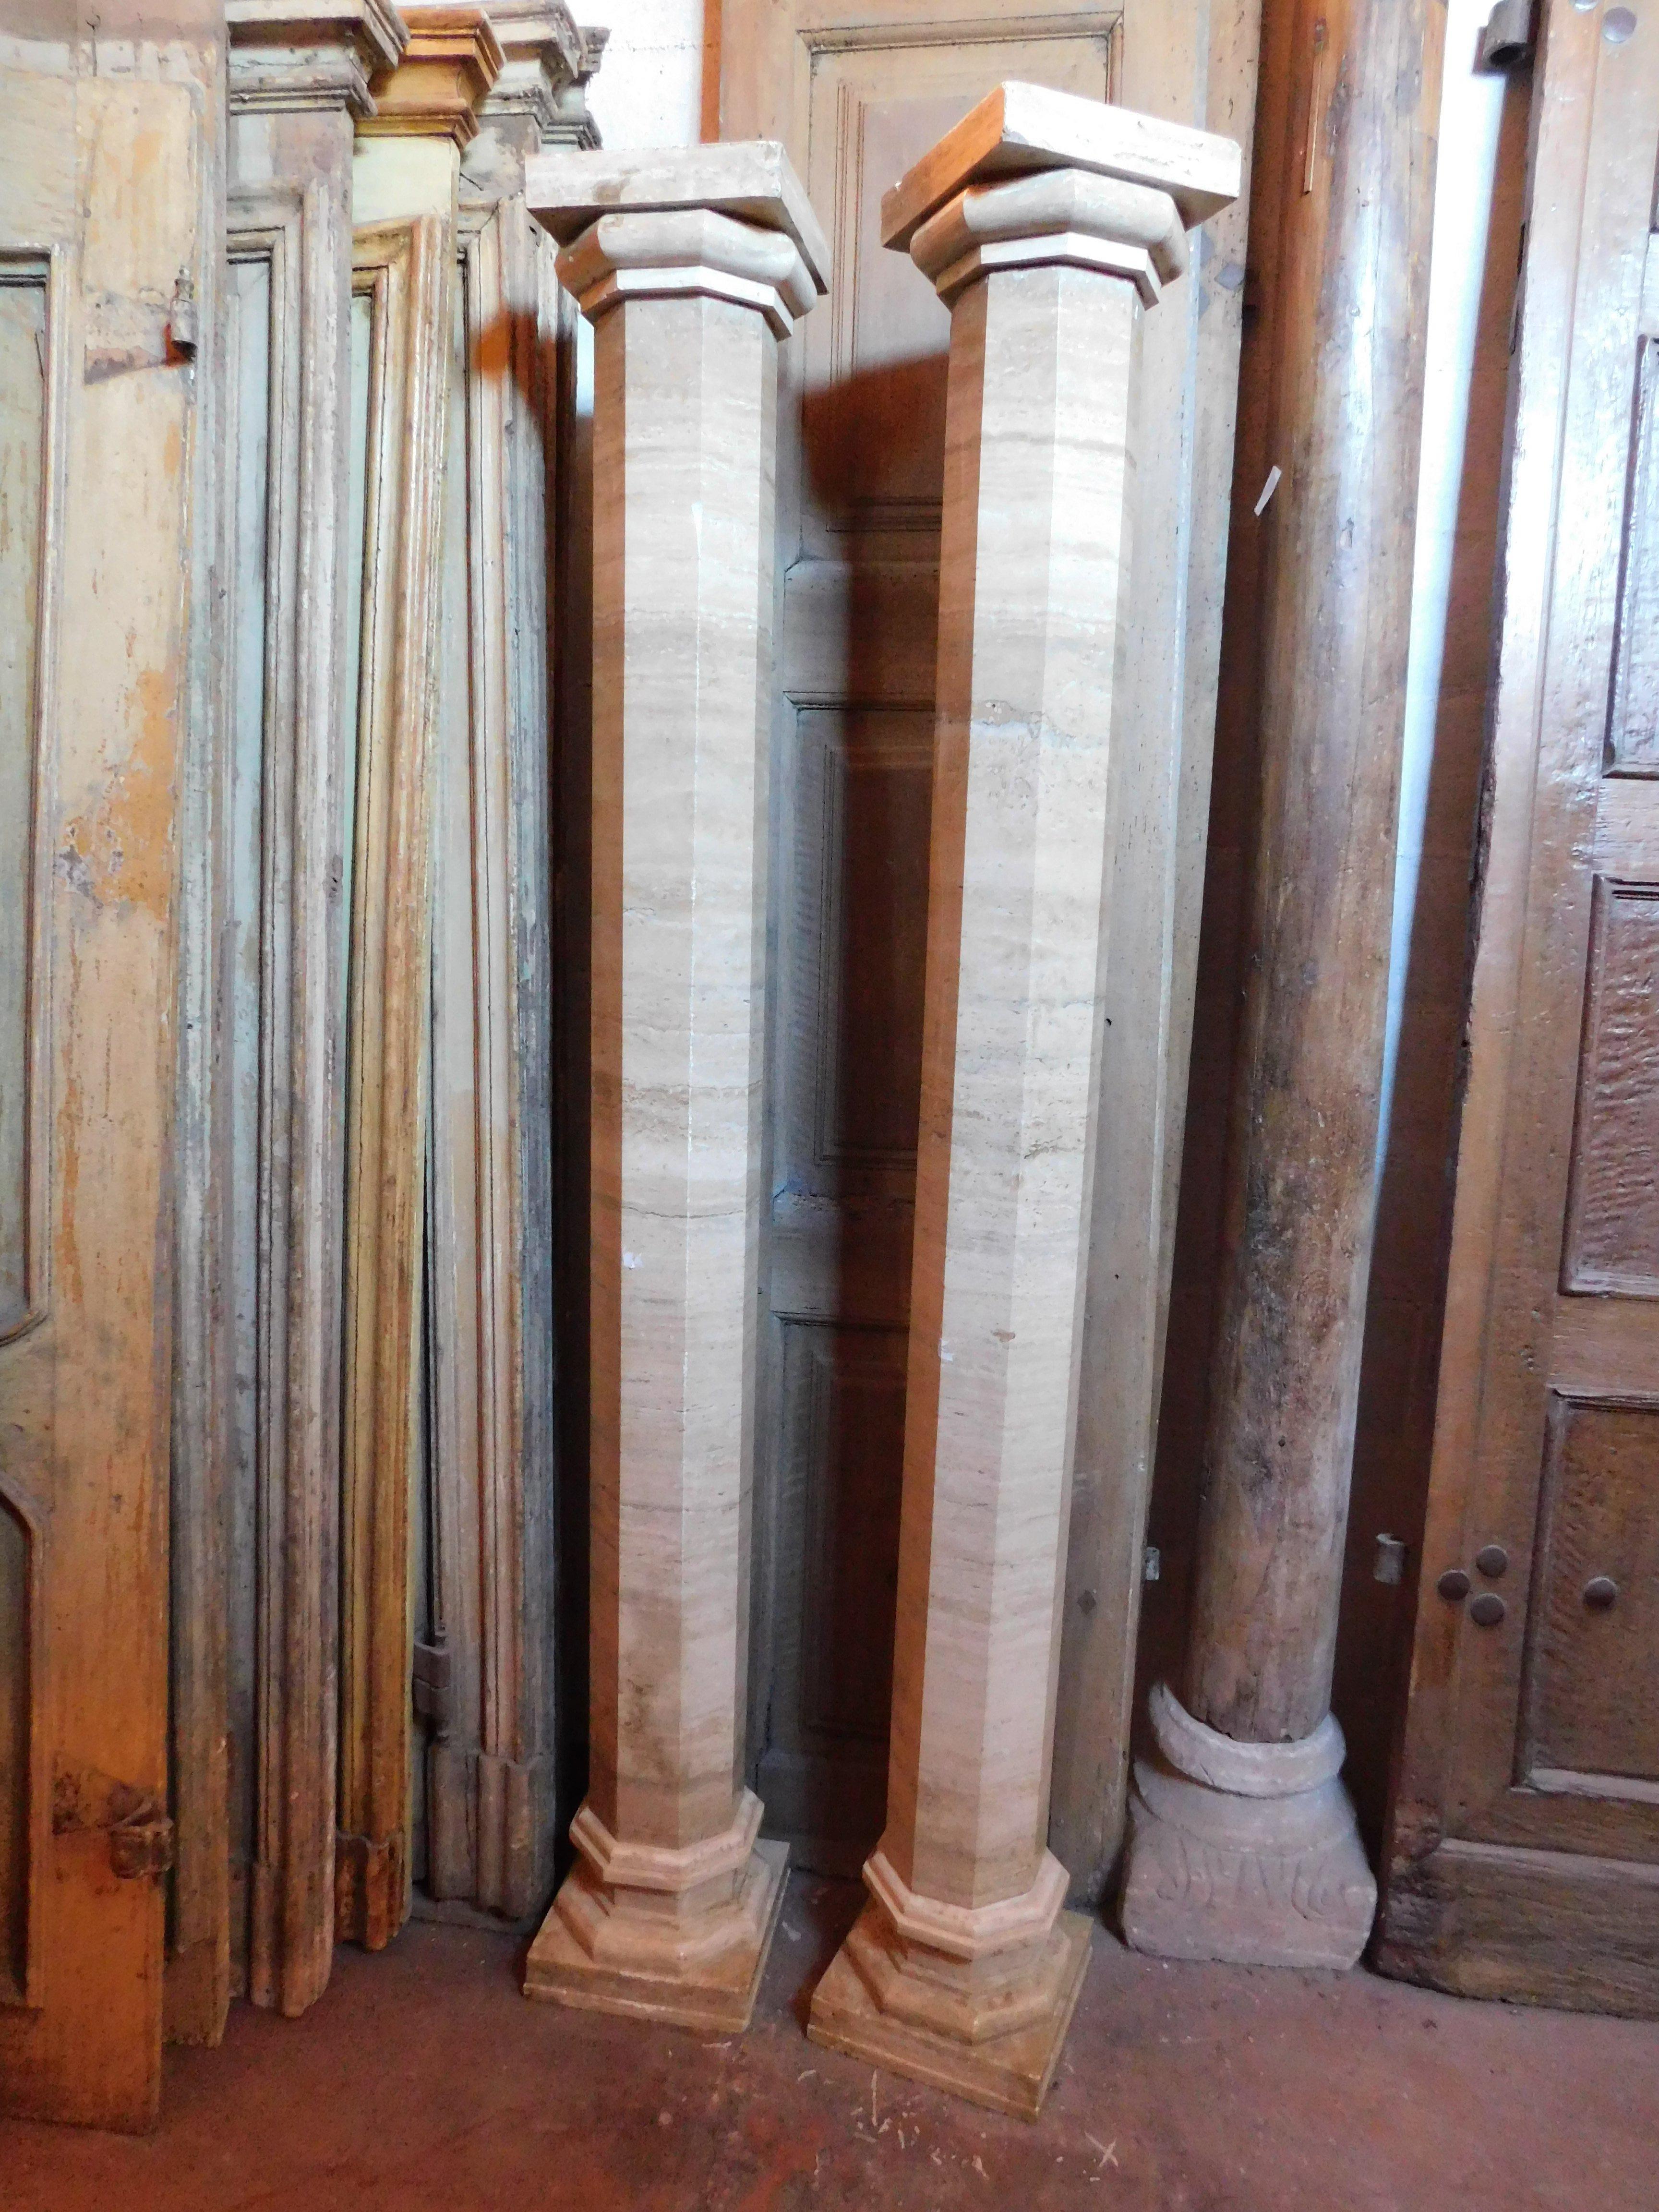 Paire de colonnes vintage avec base et chapiteaux, de forme hexagonale en marbre beige veiné, fabriquées dans le nord de l'Italie dans les années 1930/40, mesurant cm L 27 x H 206 x P 28 chacune.
Idéal pour soutenir une entrée ou même comme mobilier